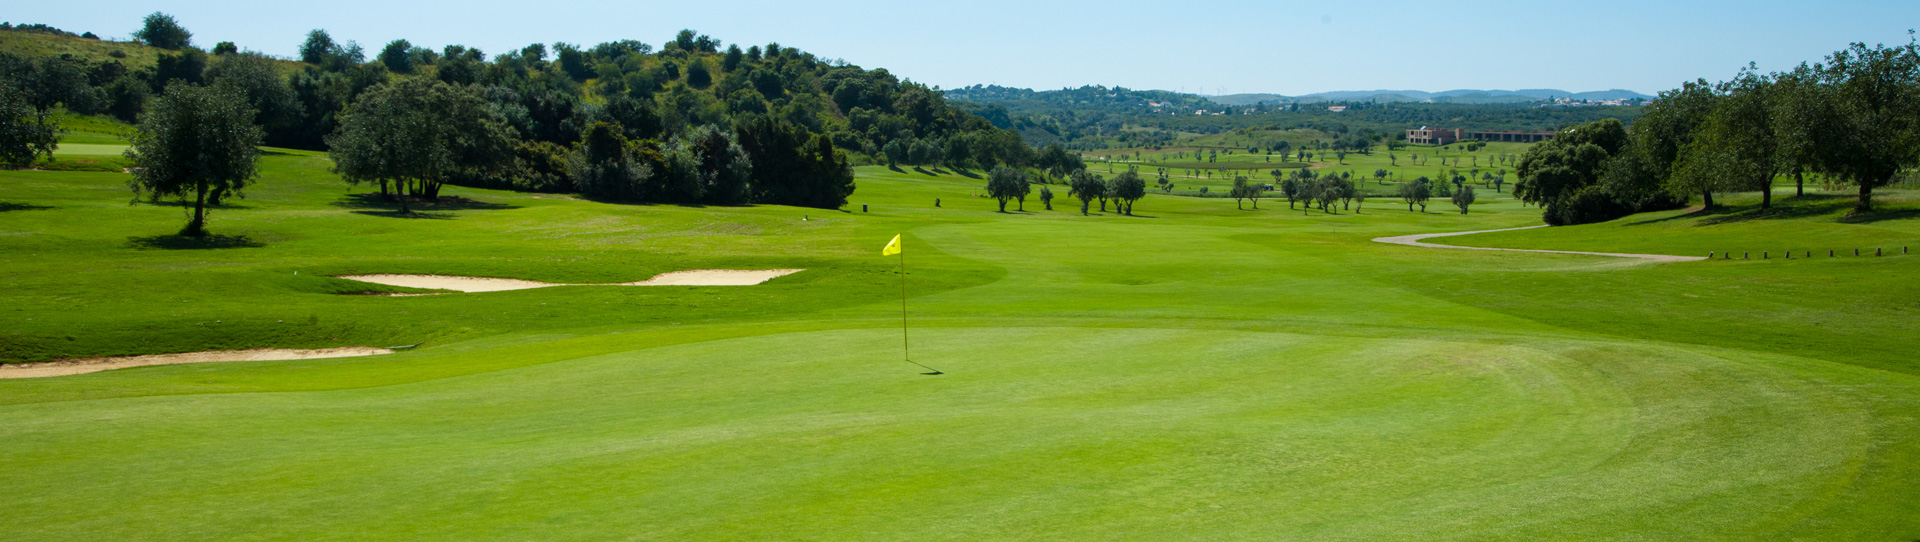 Portugal golf holidays - Salgados / Alamos / Morgado - Photo 1